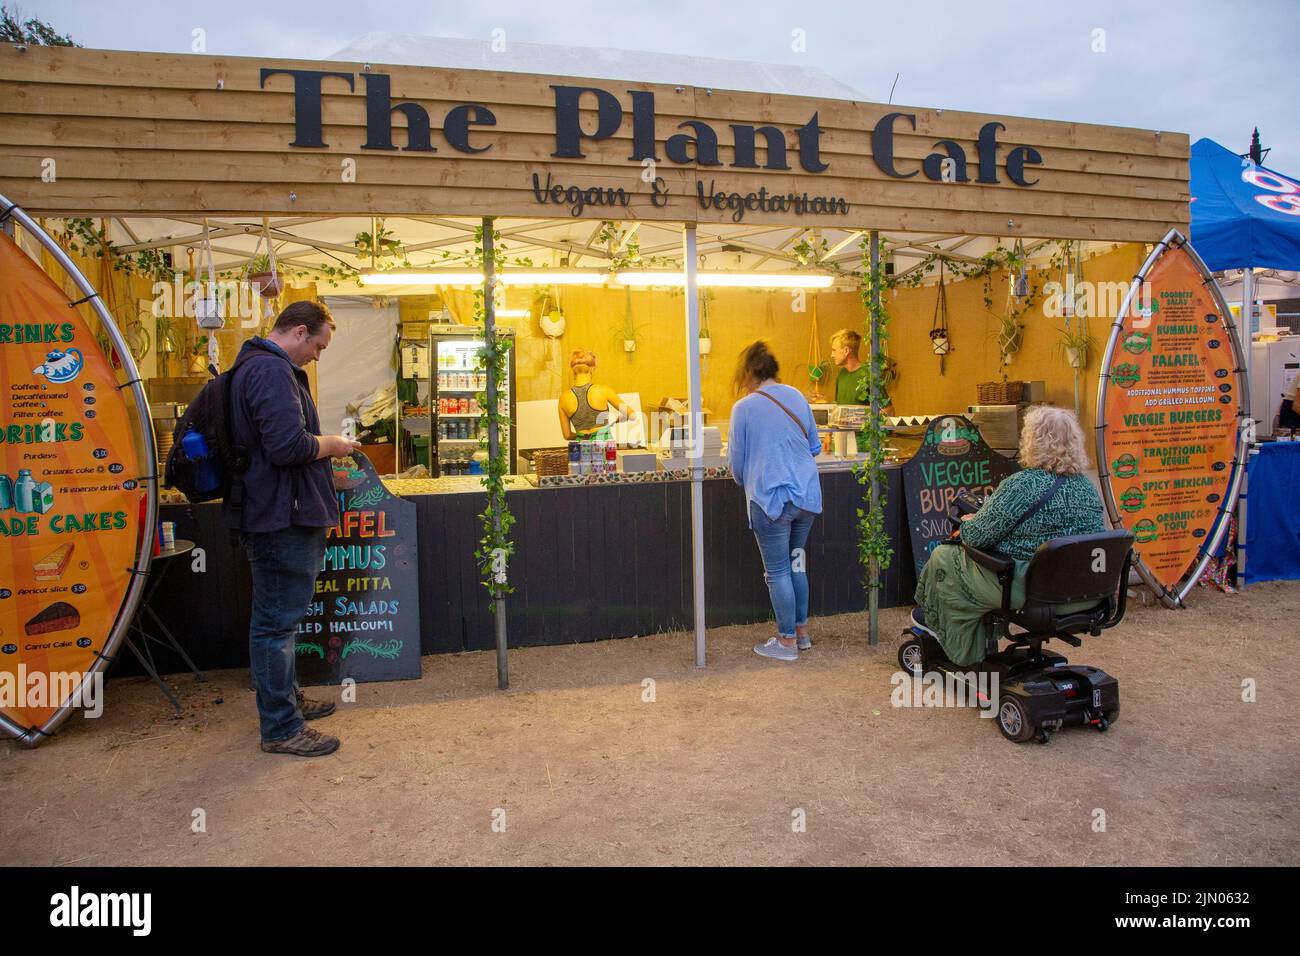 Vegano y vegetariano pop up cafe, el Plant Cafe, comida, comer al aire libre, al aire libre Foto de stock